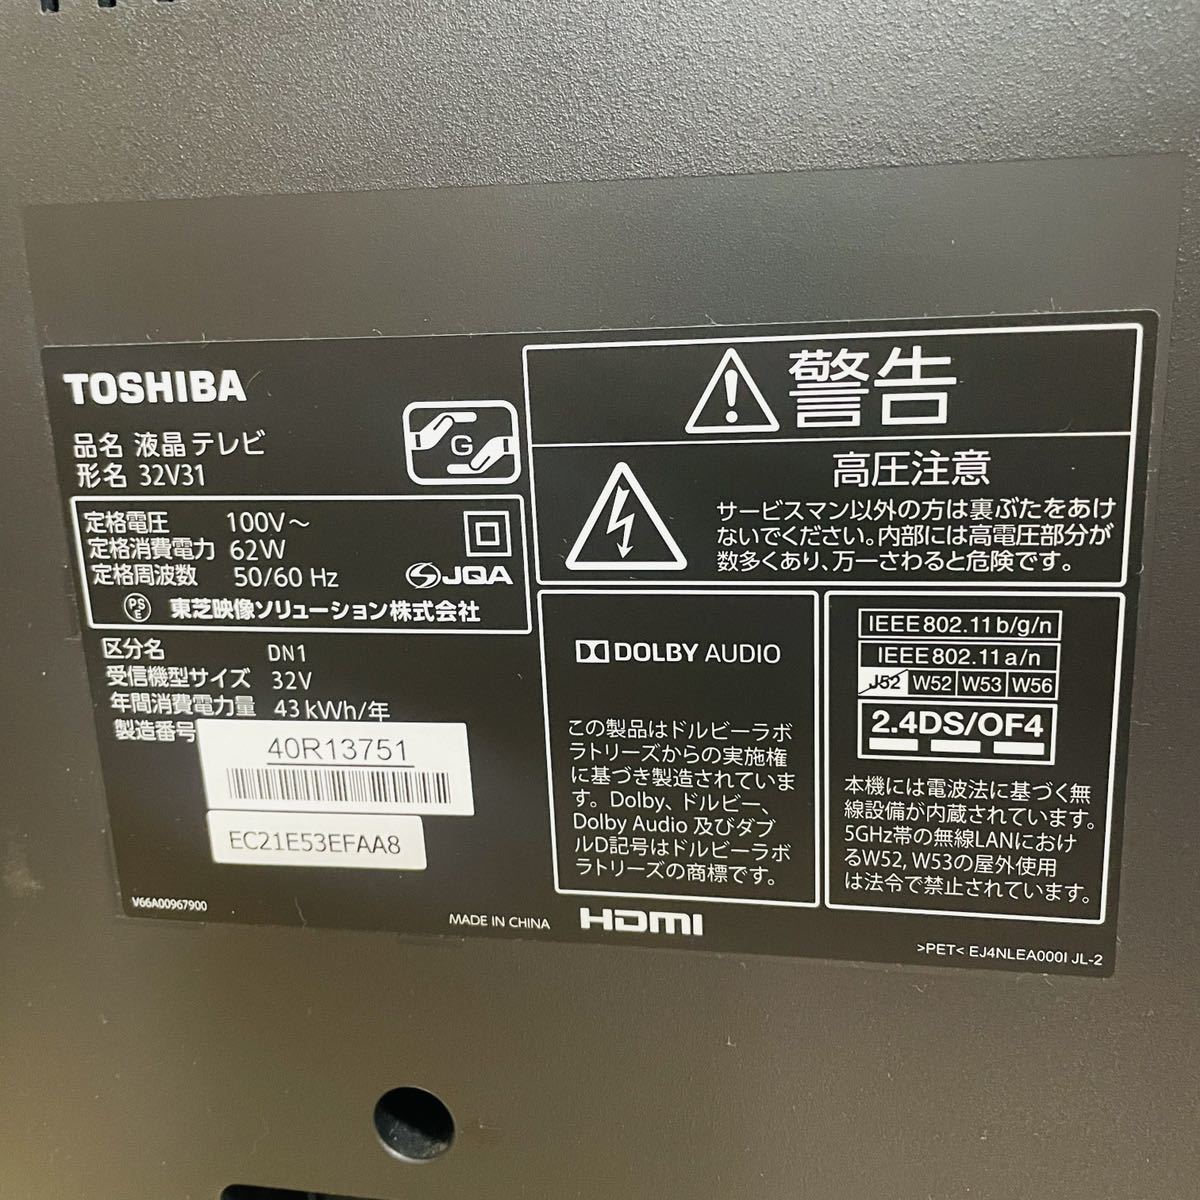  TOSHIBA 東芝 液晶テレビ 32V31 REGZA レグザ 32Vインチ 